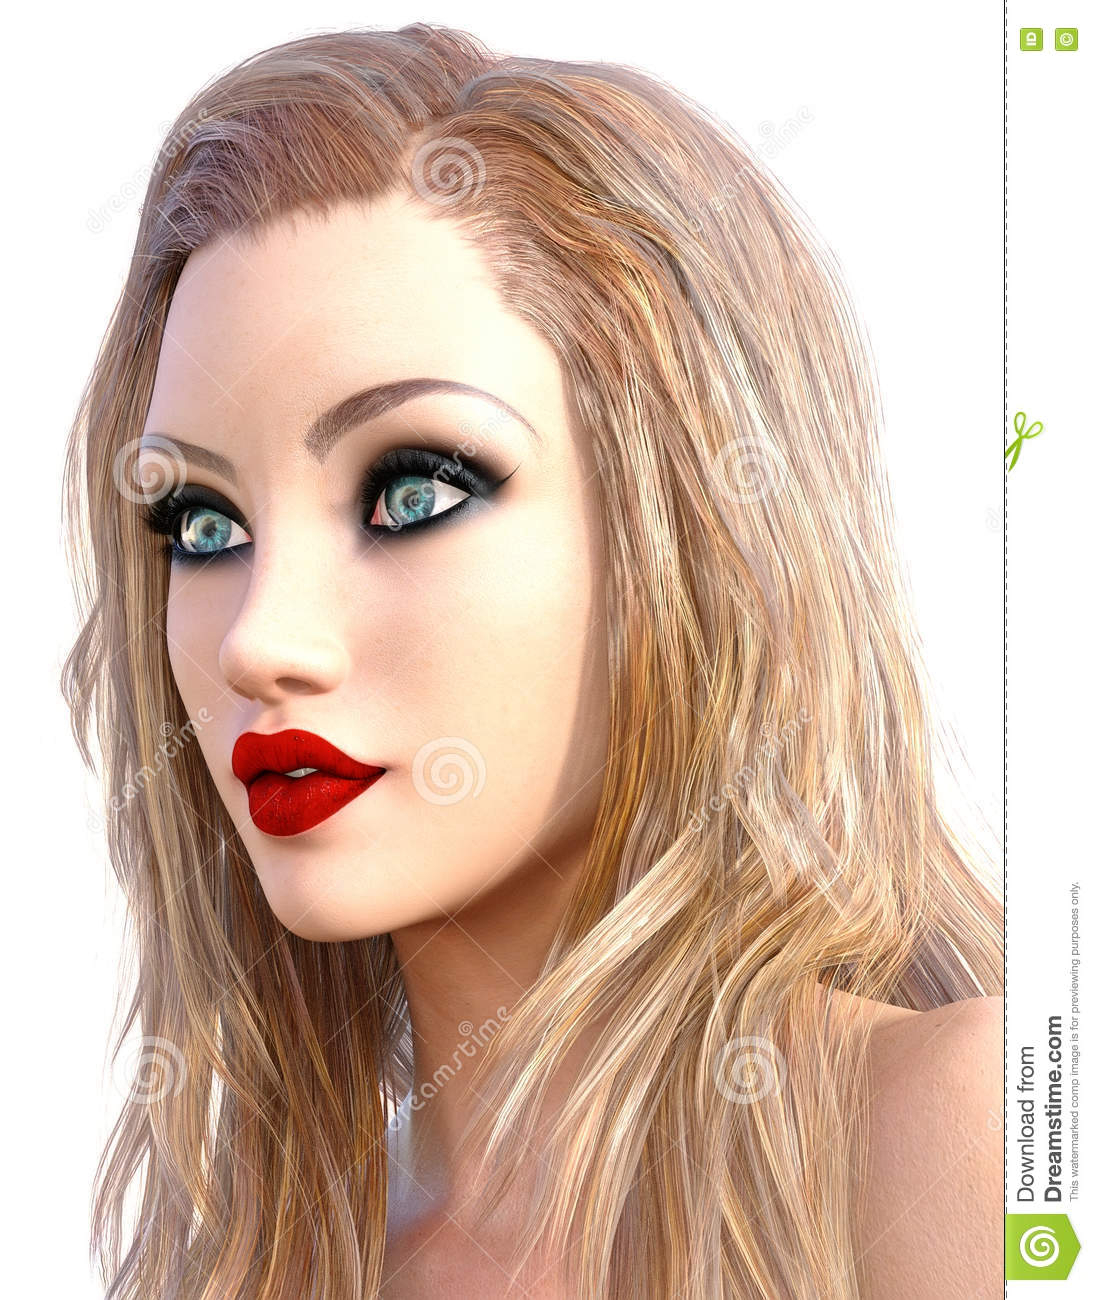 Eye Makeup For Blonde Hair Green Eyes Glamorous Girl Stock Illustration Illustration Of Romantic 76364980